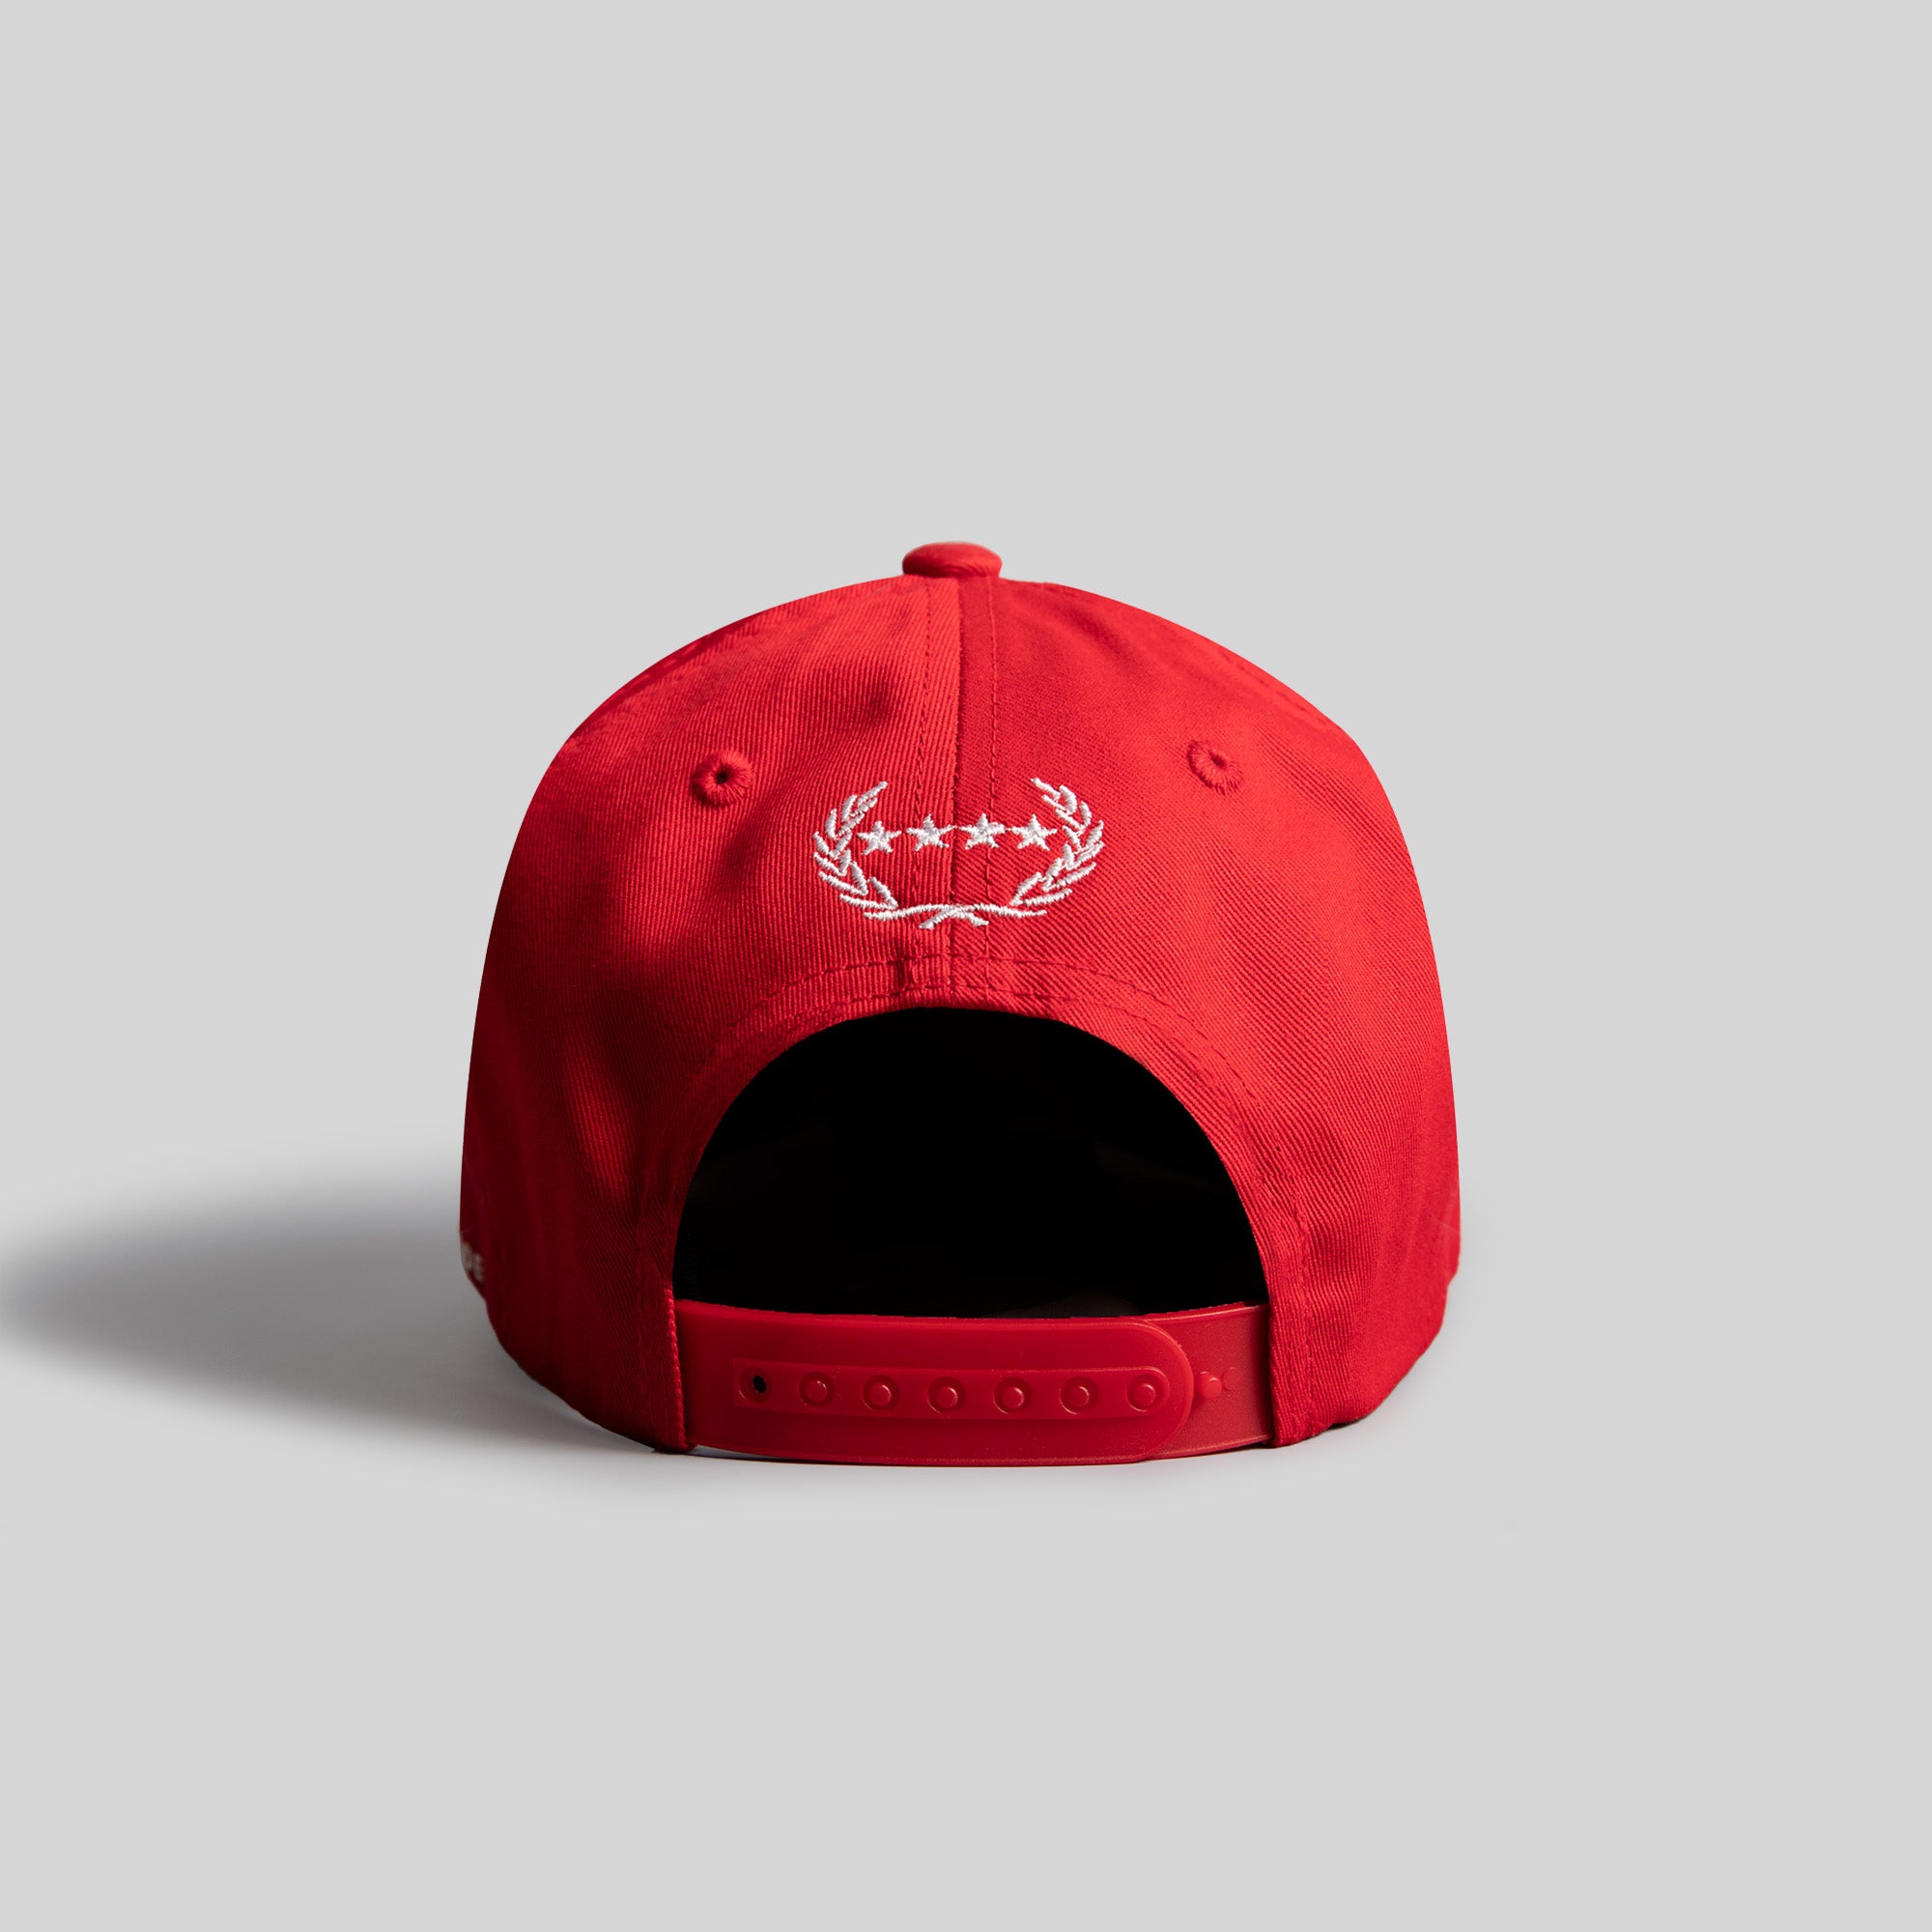 RESPECTFULLY VARSITY RED TRUCKER HAT